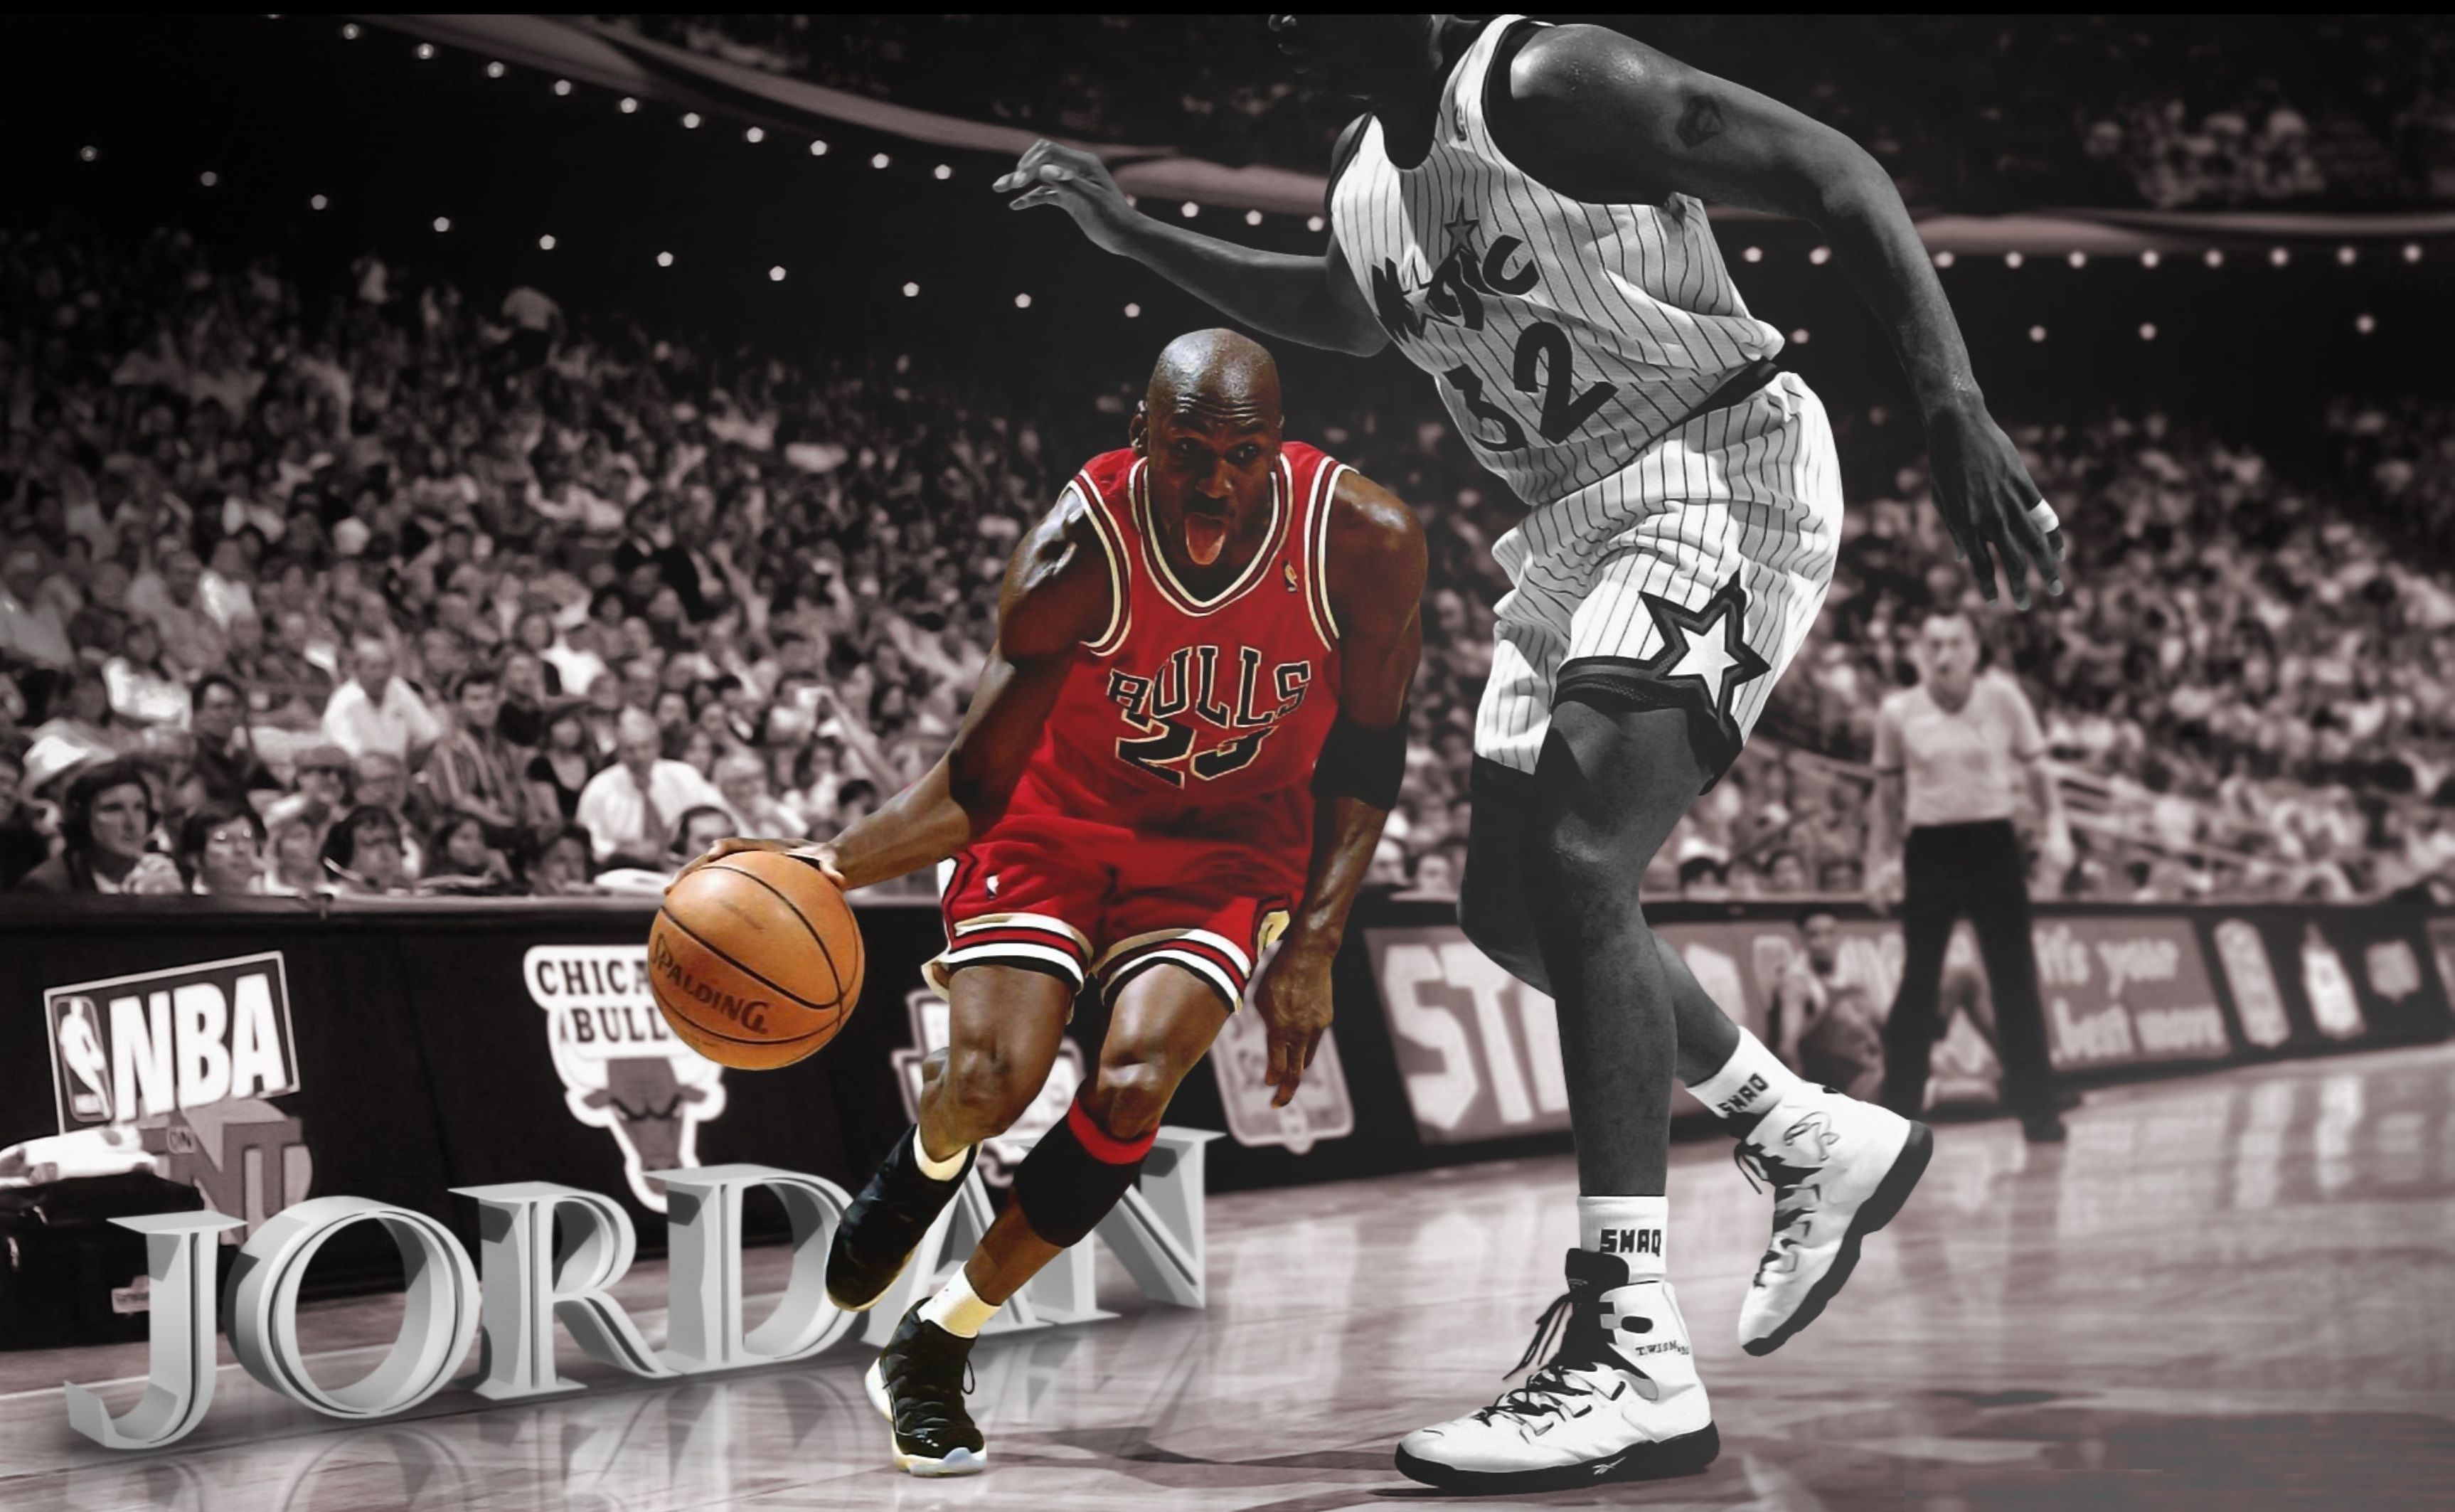 Jordan playing basketball in front of a crowd - Air Jordan, Michael Jordan